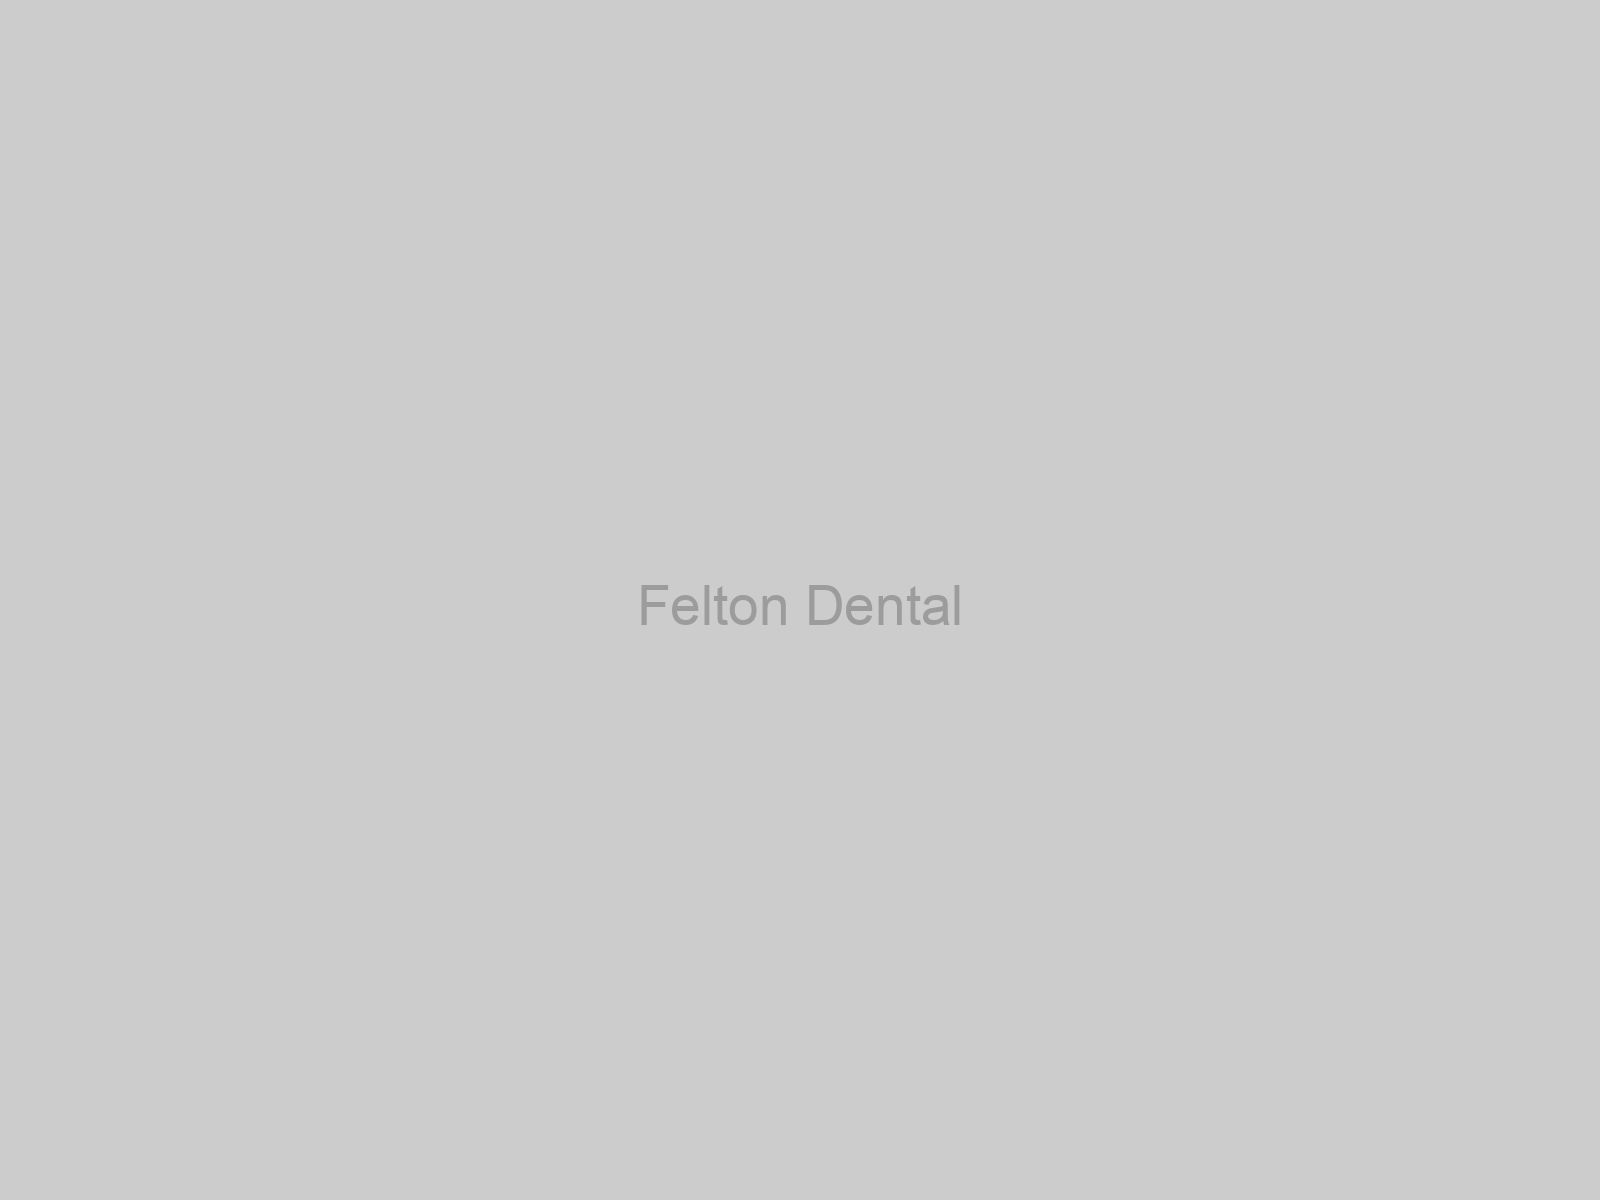 Felton Dental